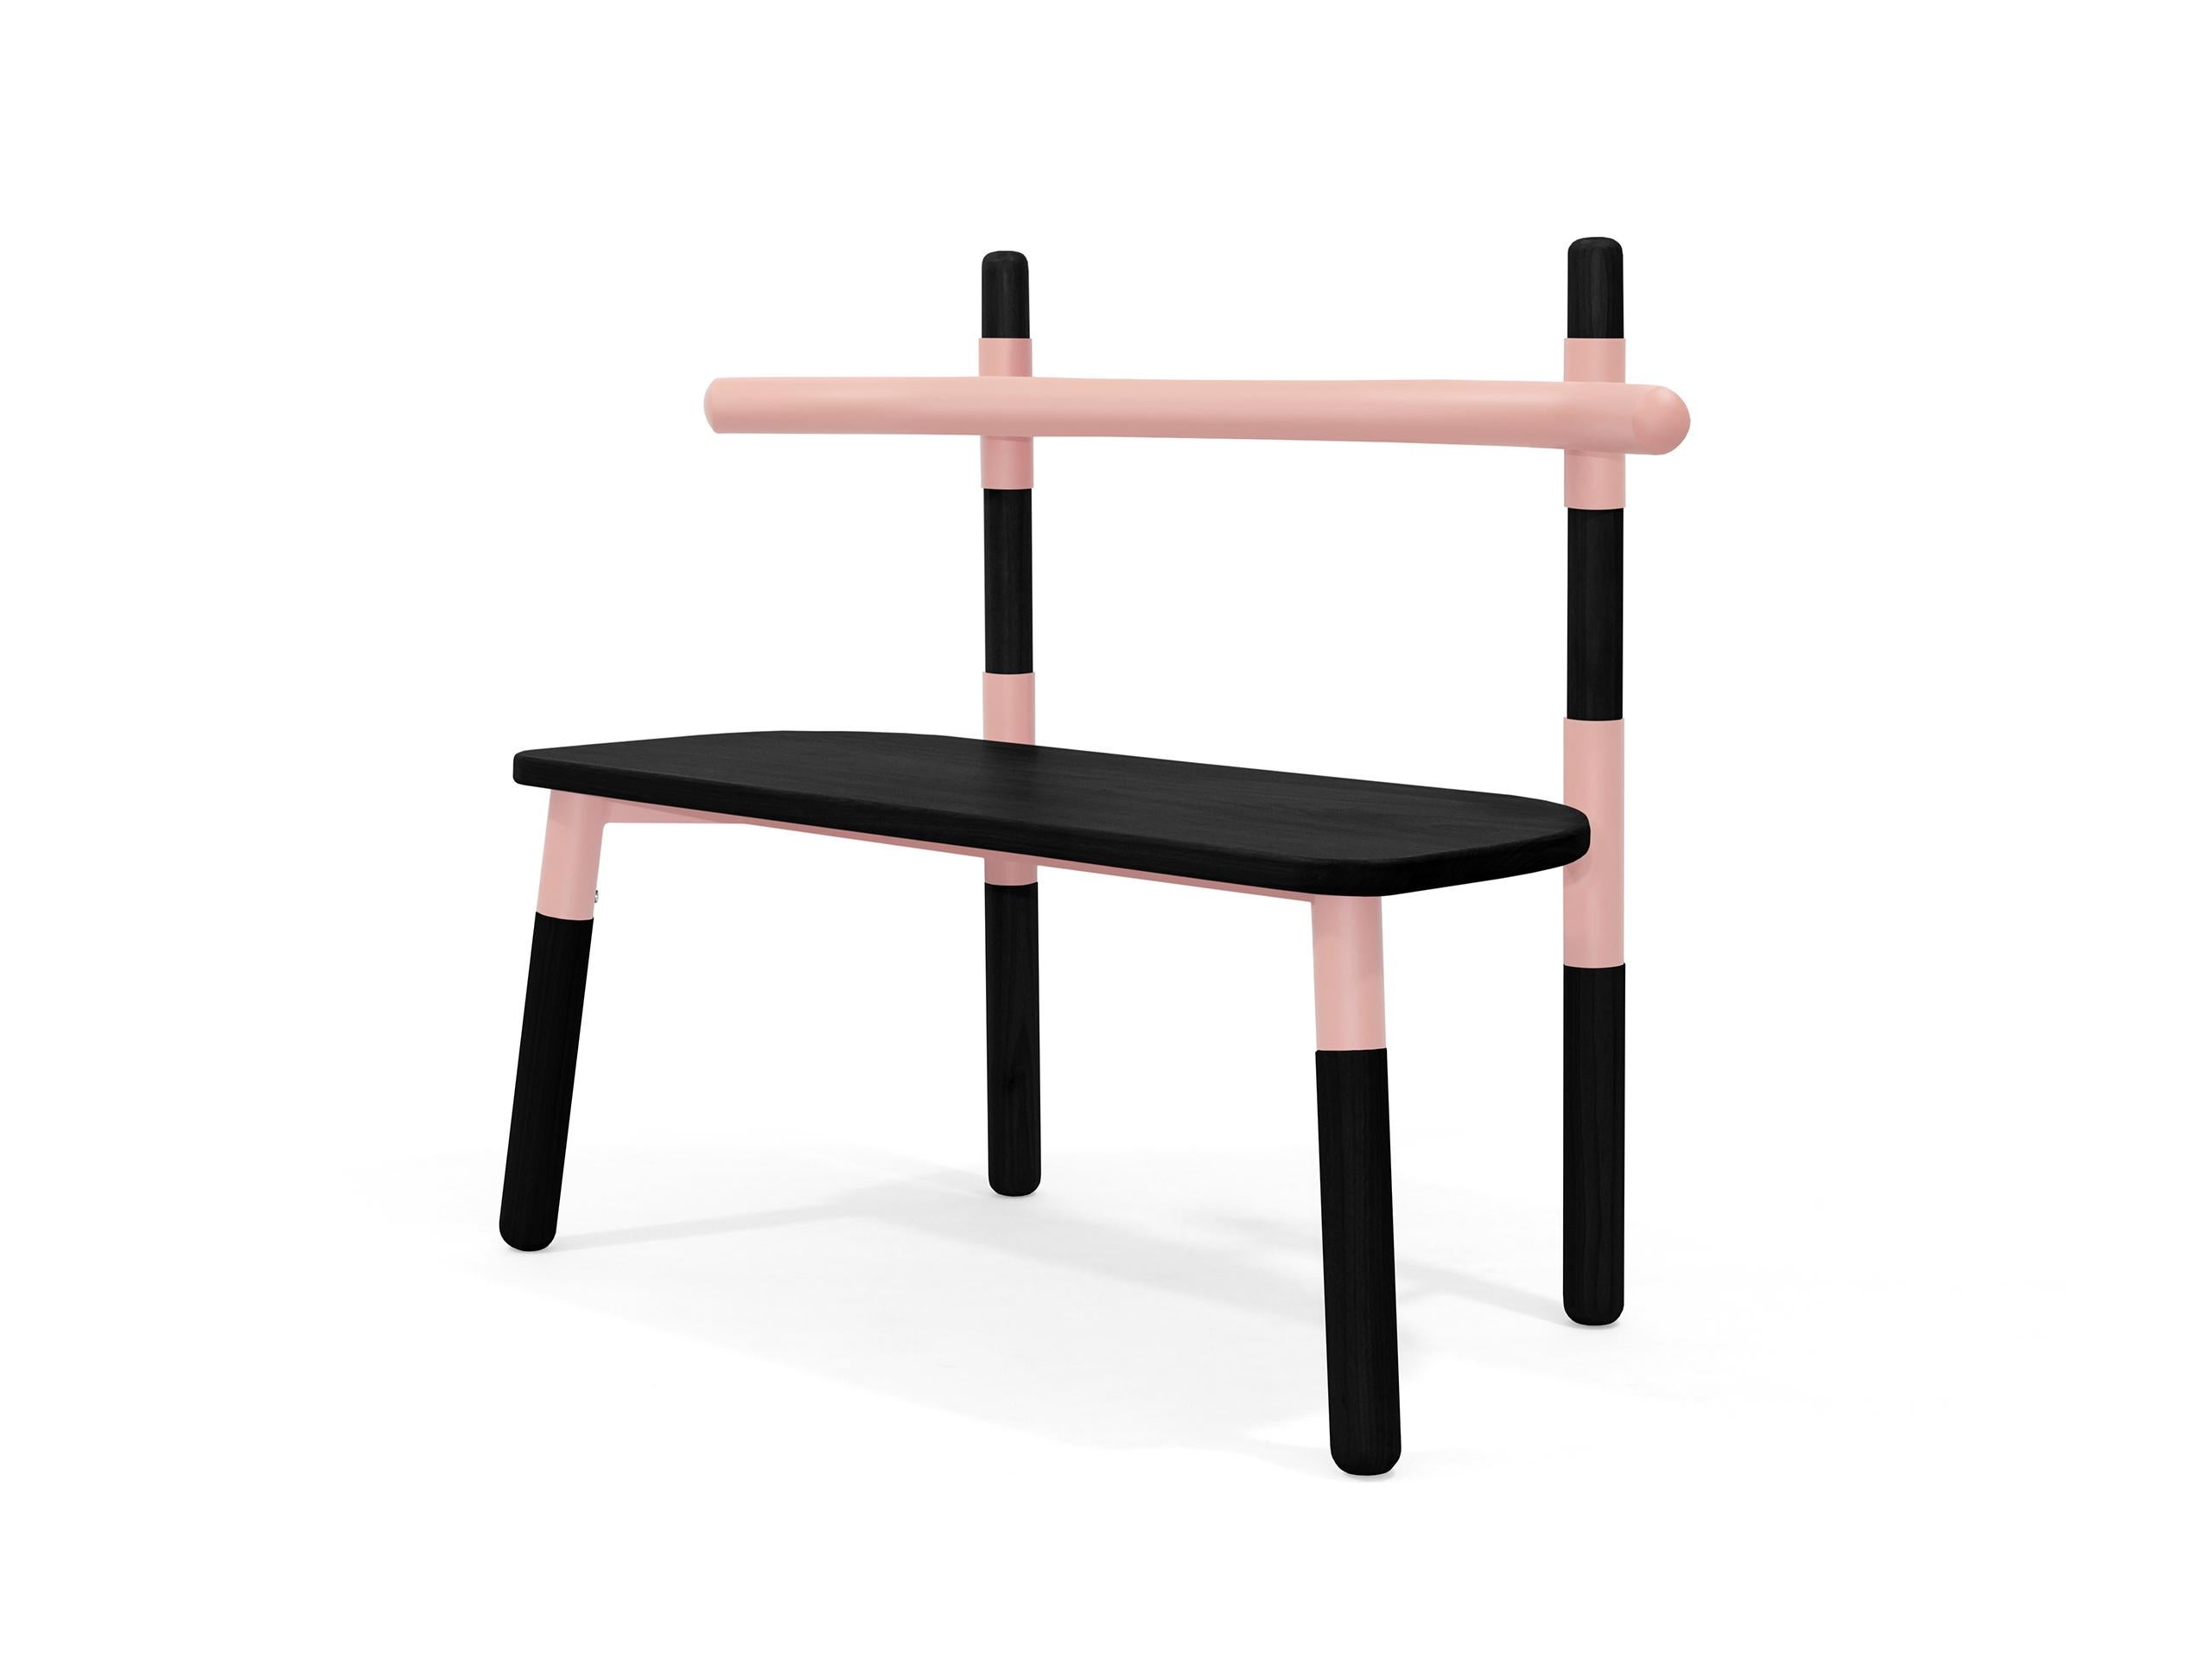 La chaise double PK14 s'inspire des fermes en bois utilisées dans la construction des toits.
Les douilles de chaise font référence à la 